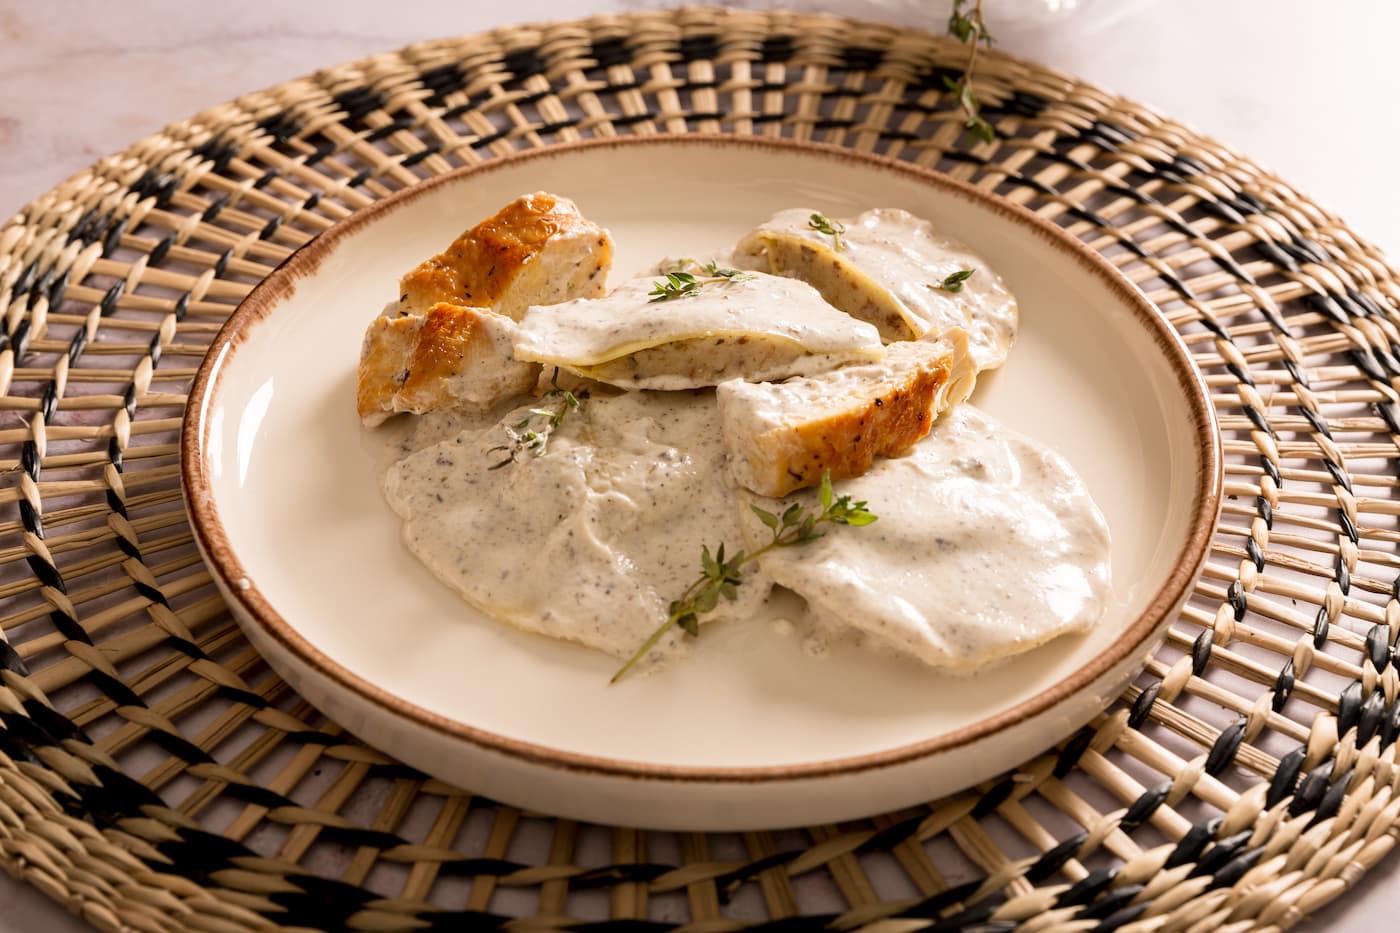 Receta Capellacci Chantarela y Grana Padano con salsa cremosa de tartufo y pollo asado. Paso 5: emplatar con pollo y plato listo